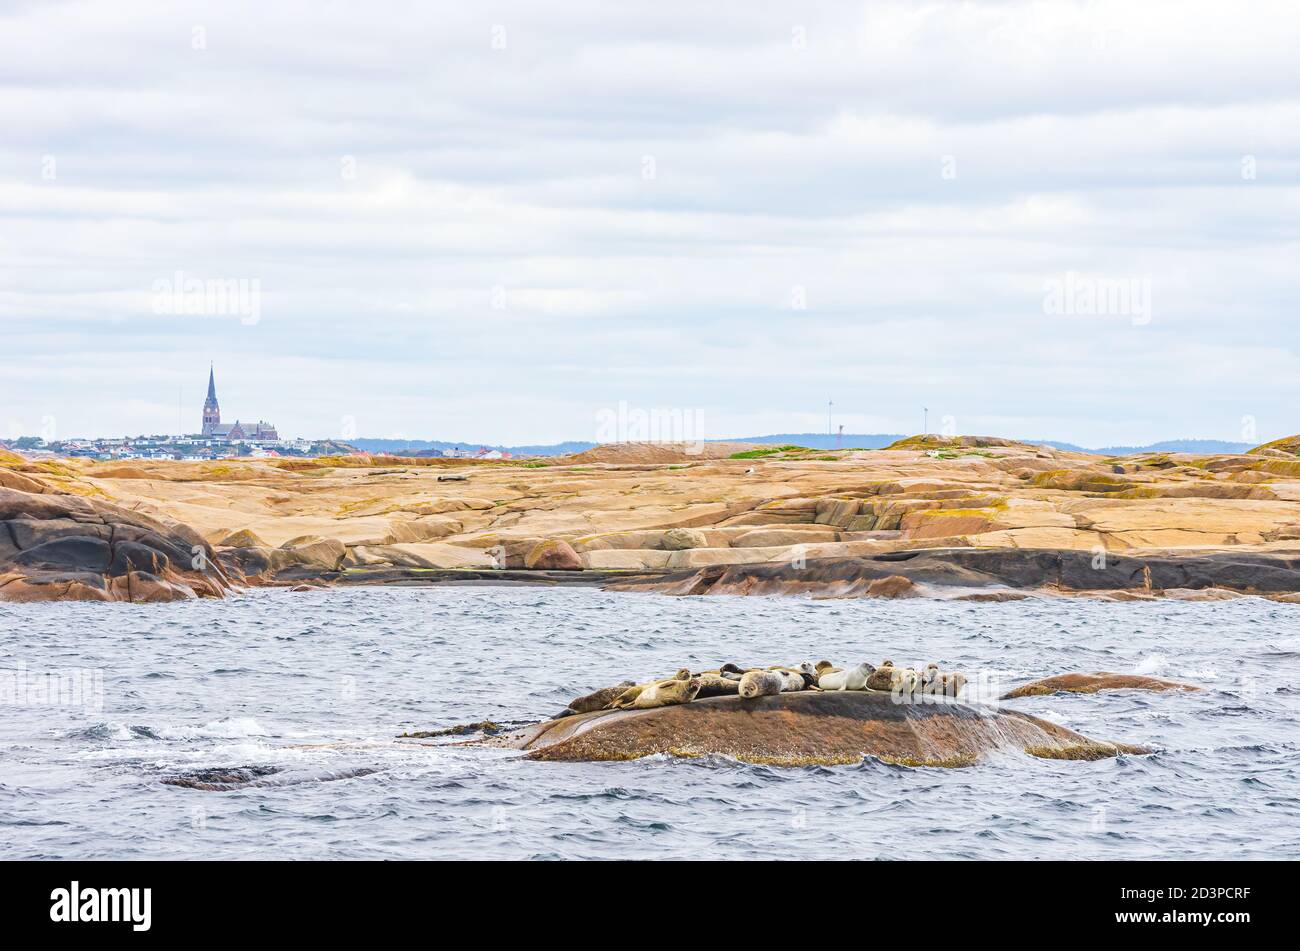 Robbenkolonie auf einer felsigen Insel im Archipel vor Lysekil, Bohuslan, Vastra Gotaland County, Schweden. Stockfoto